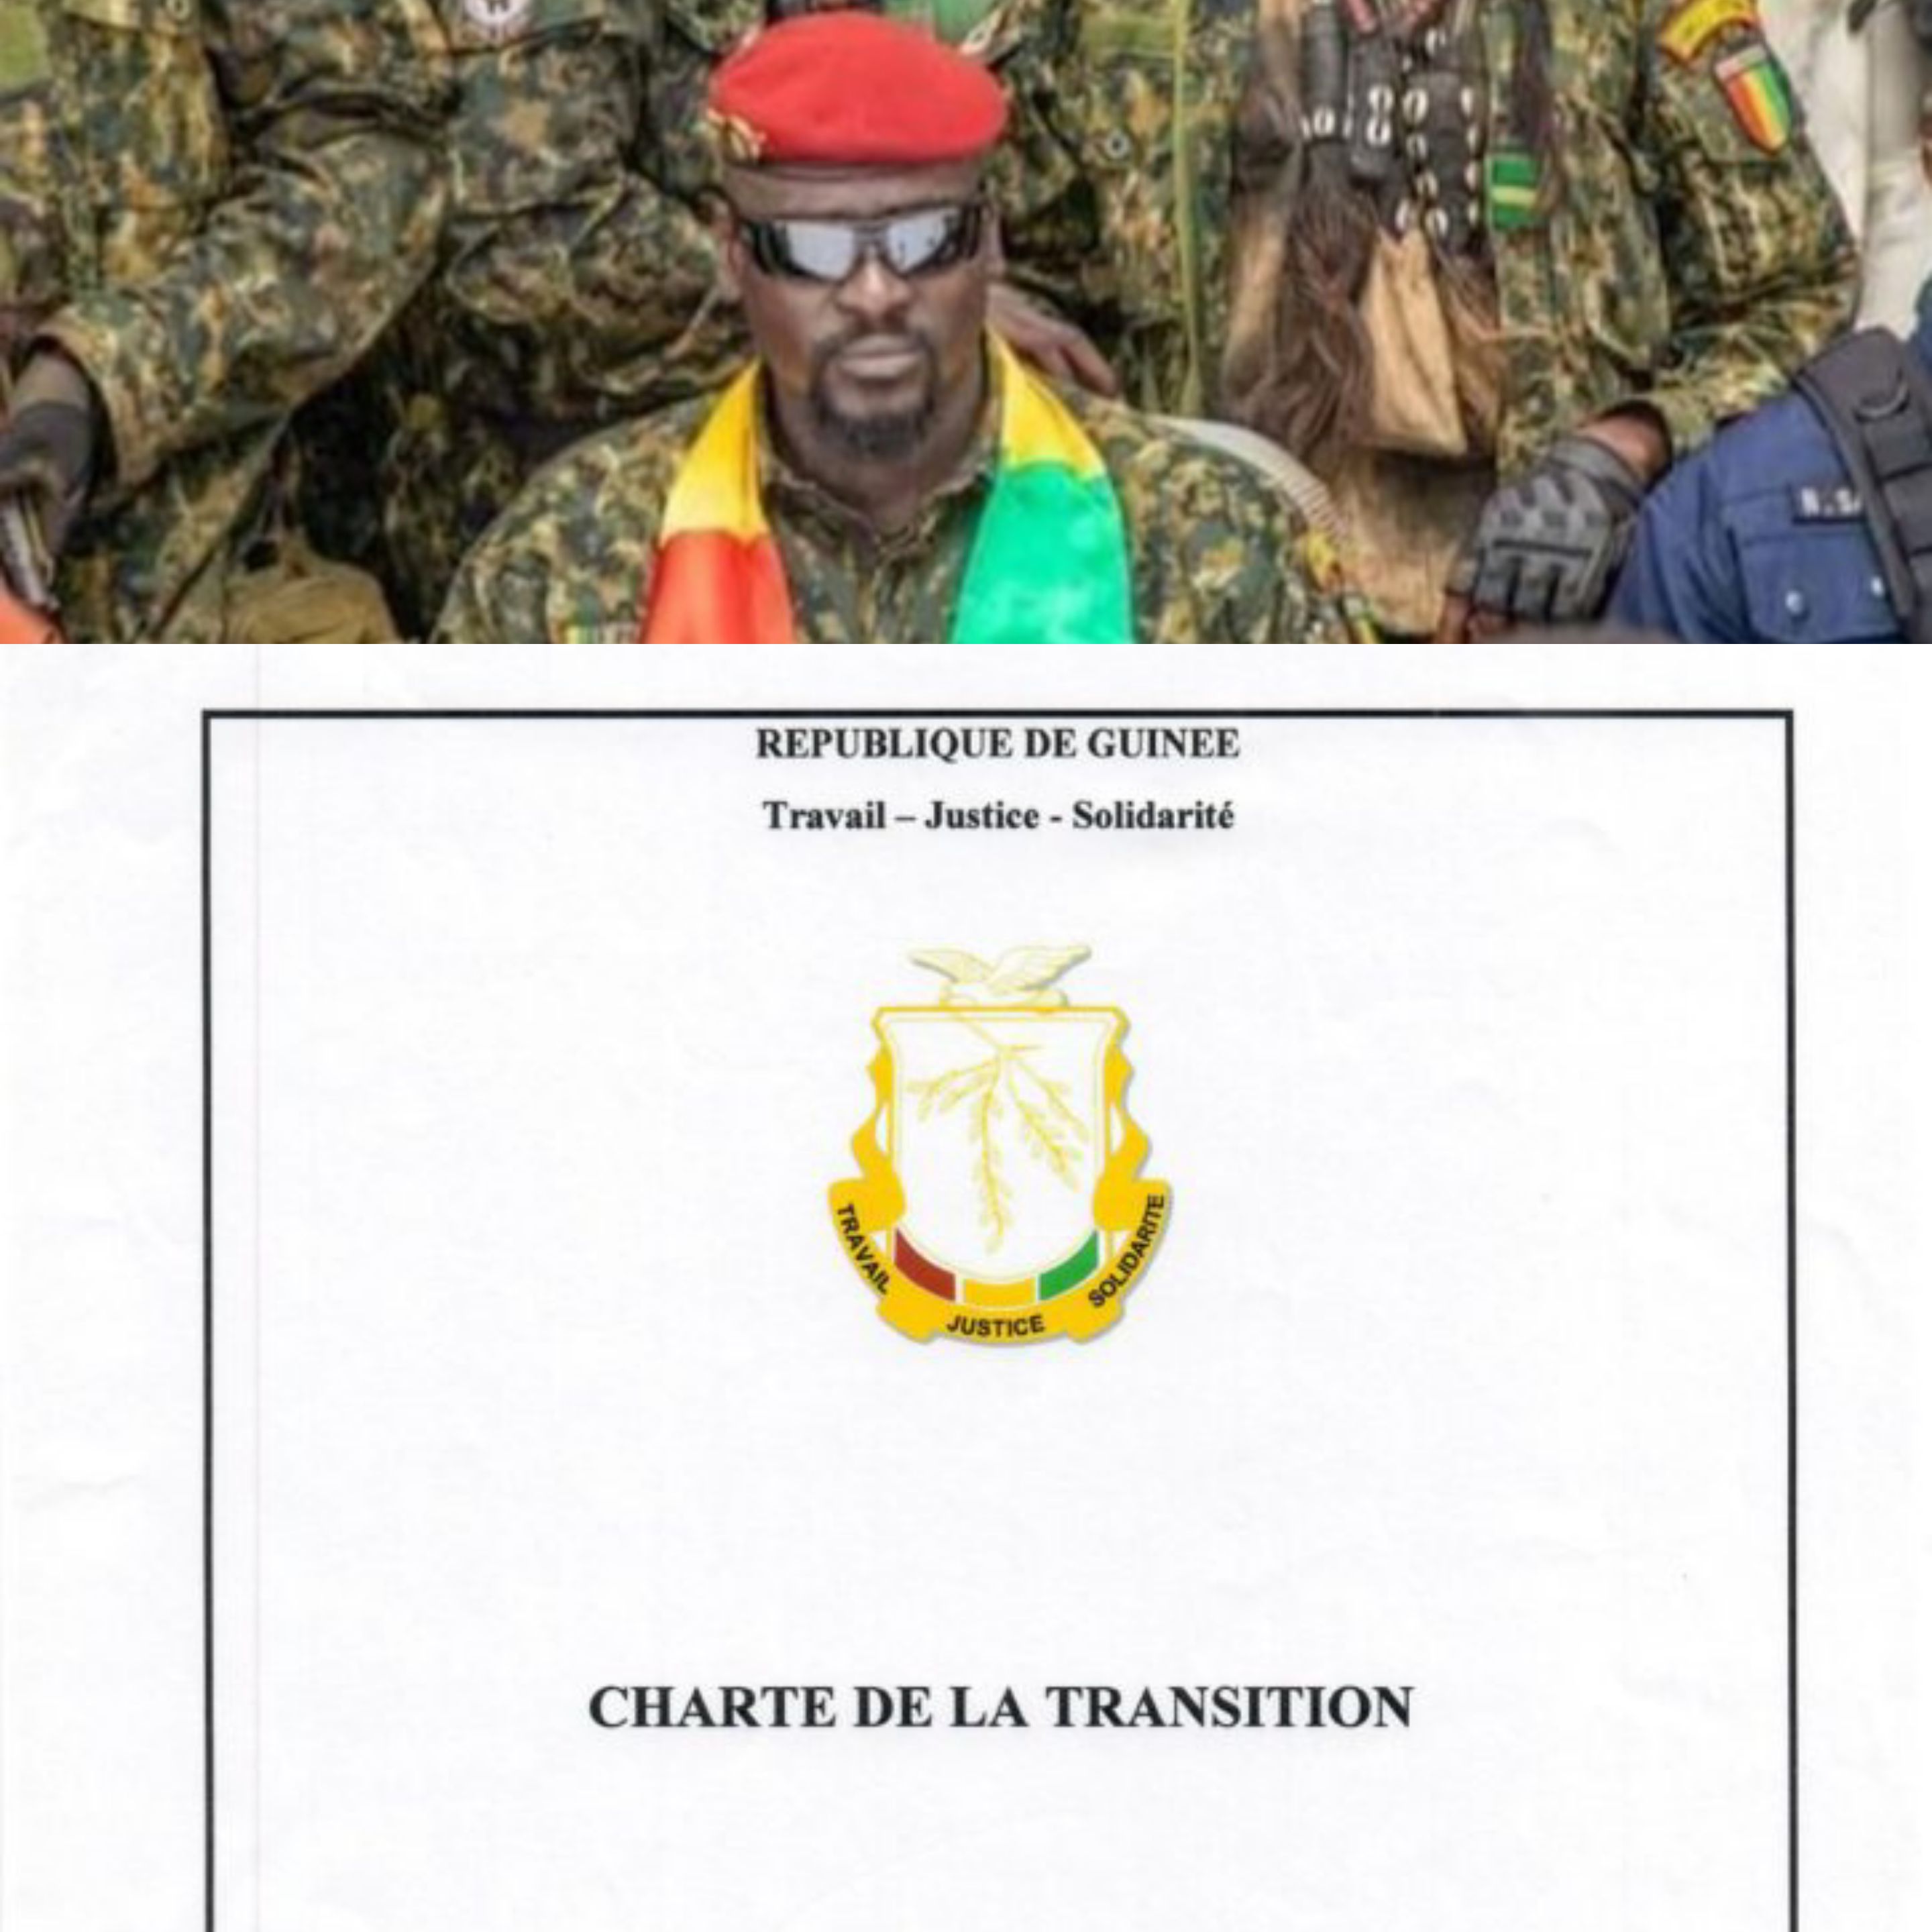 Guinée : le Cnrd publie sa charte de transition, le Président Doumbouya pas candidat à la prochaine présidentielle selon les médias guinéens